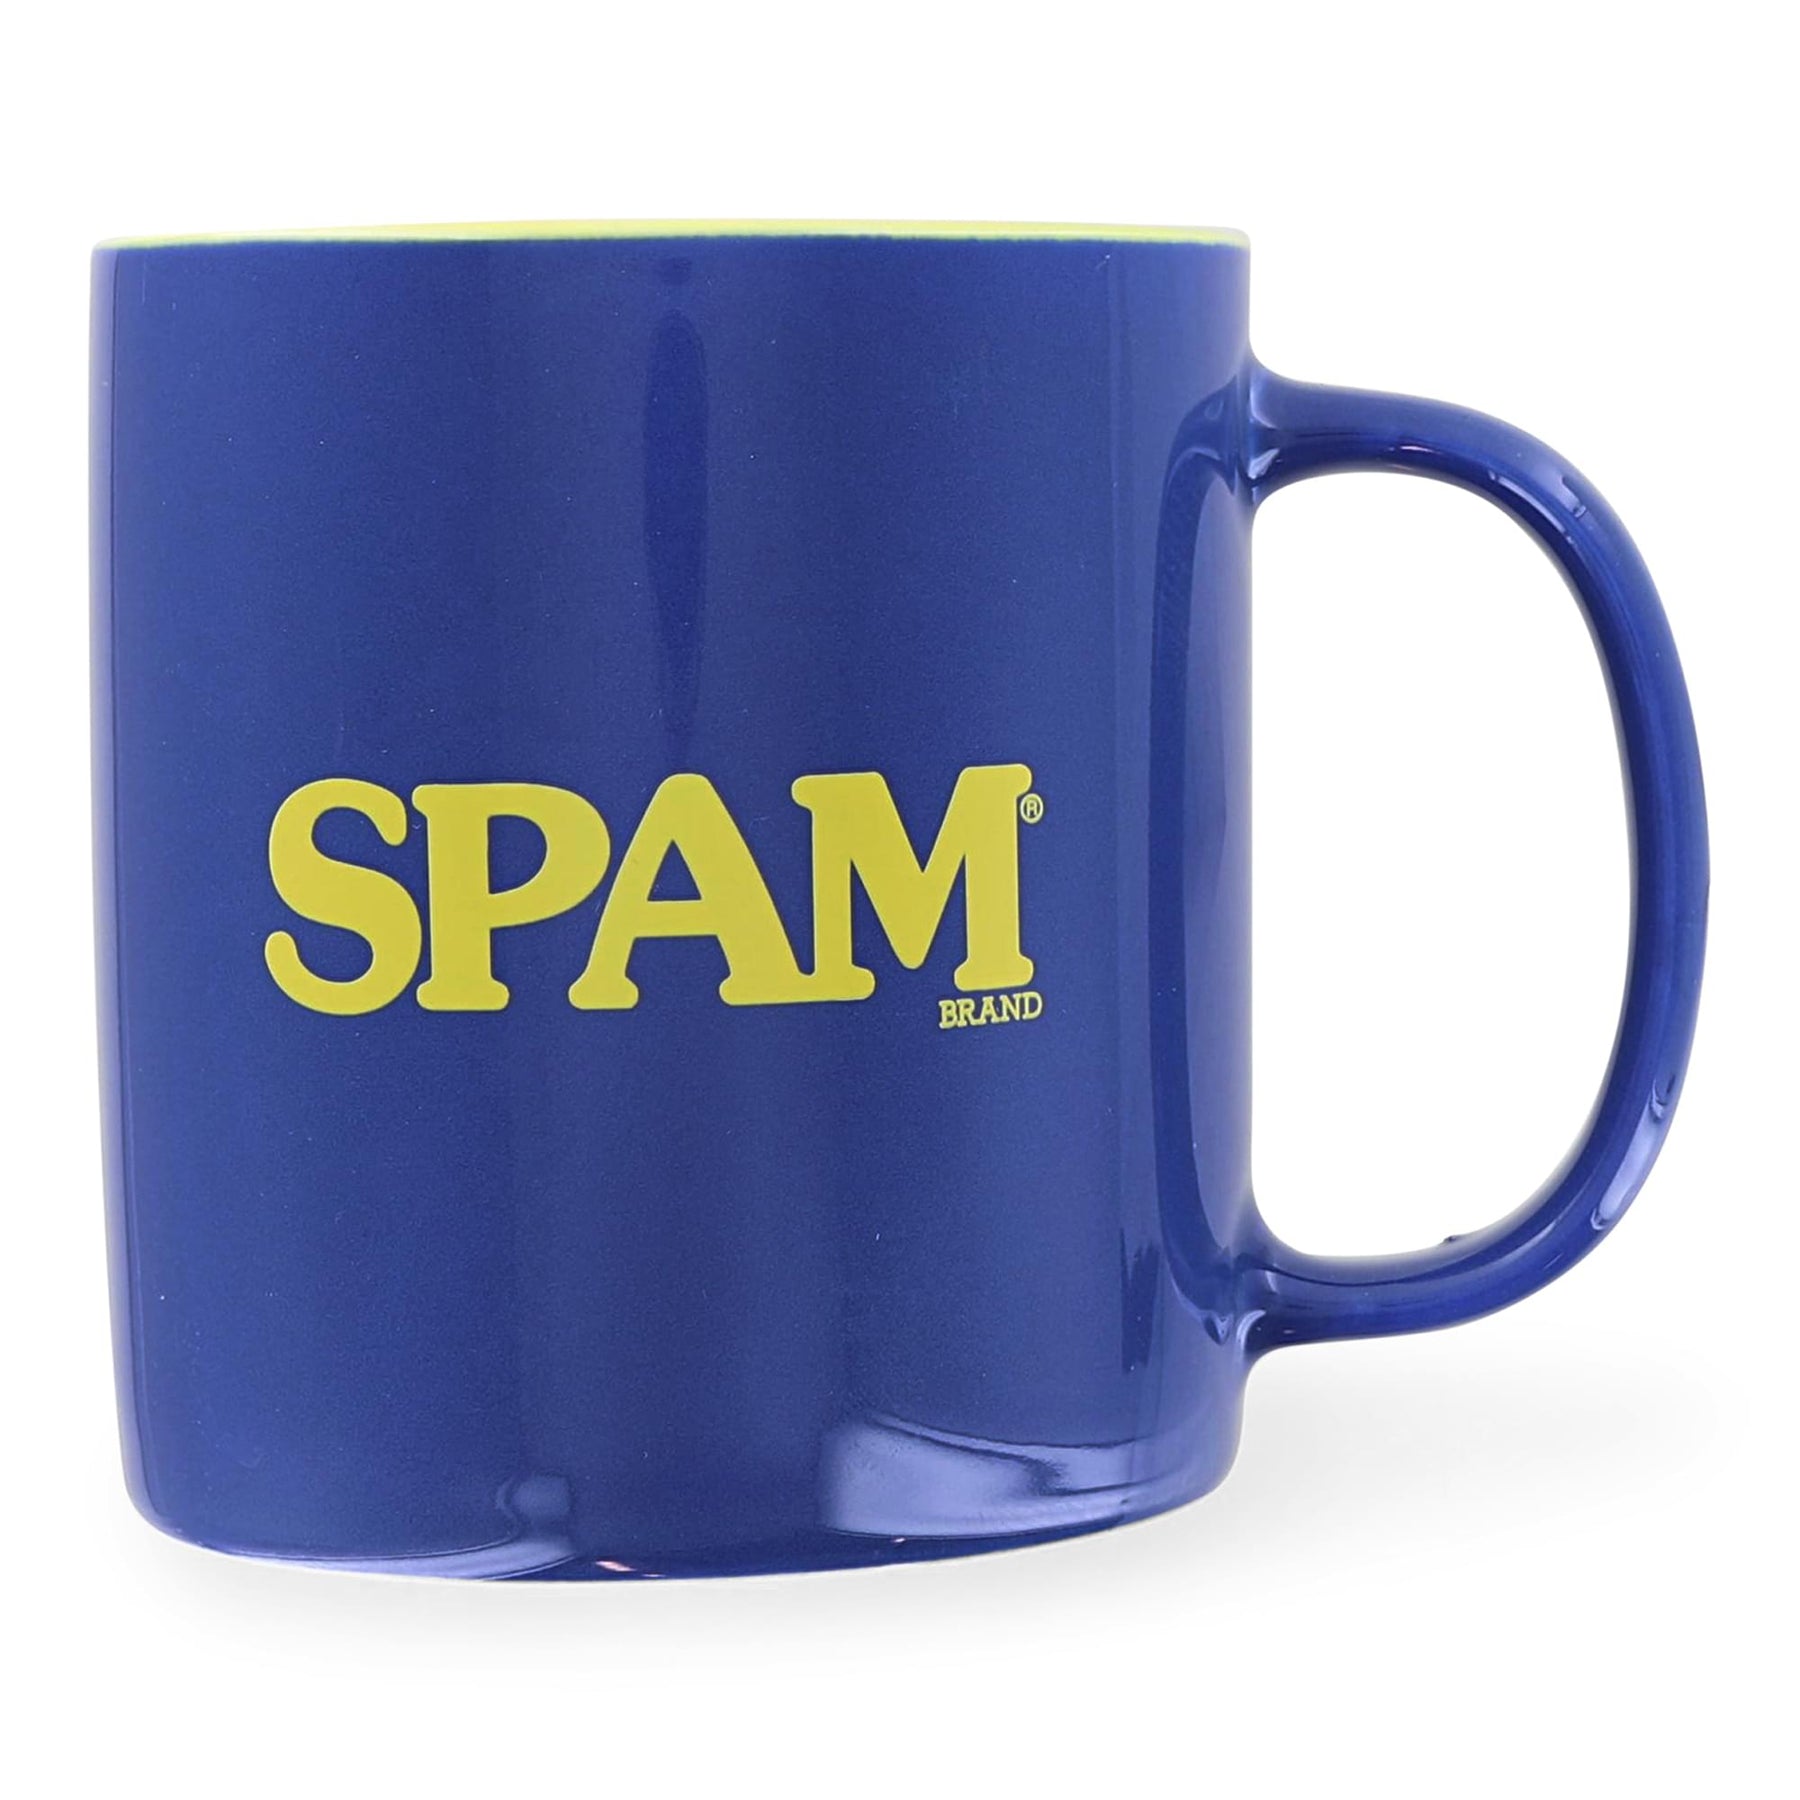 SPAM Brand 14 Ounce Ceramic Mug